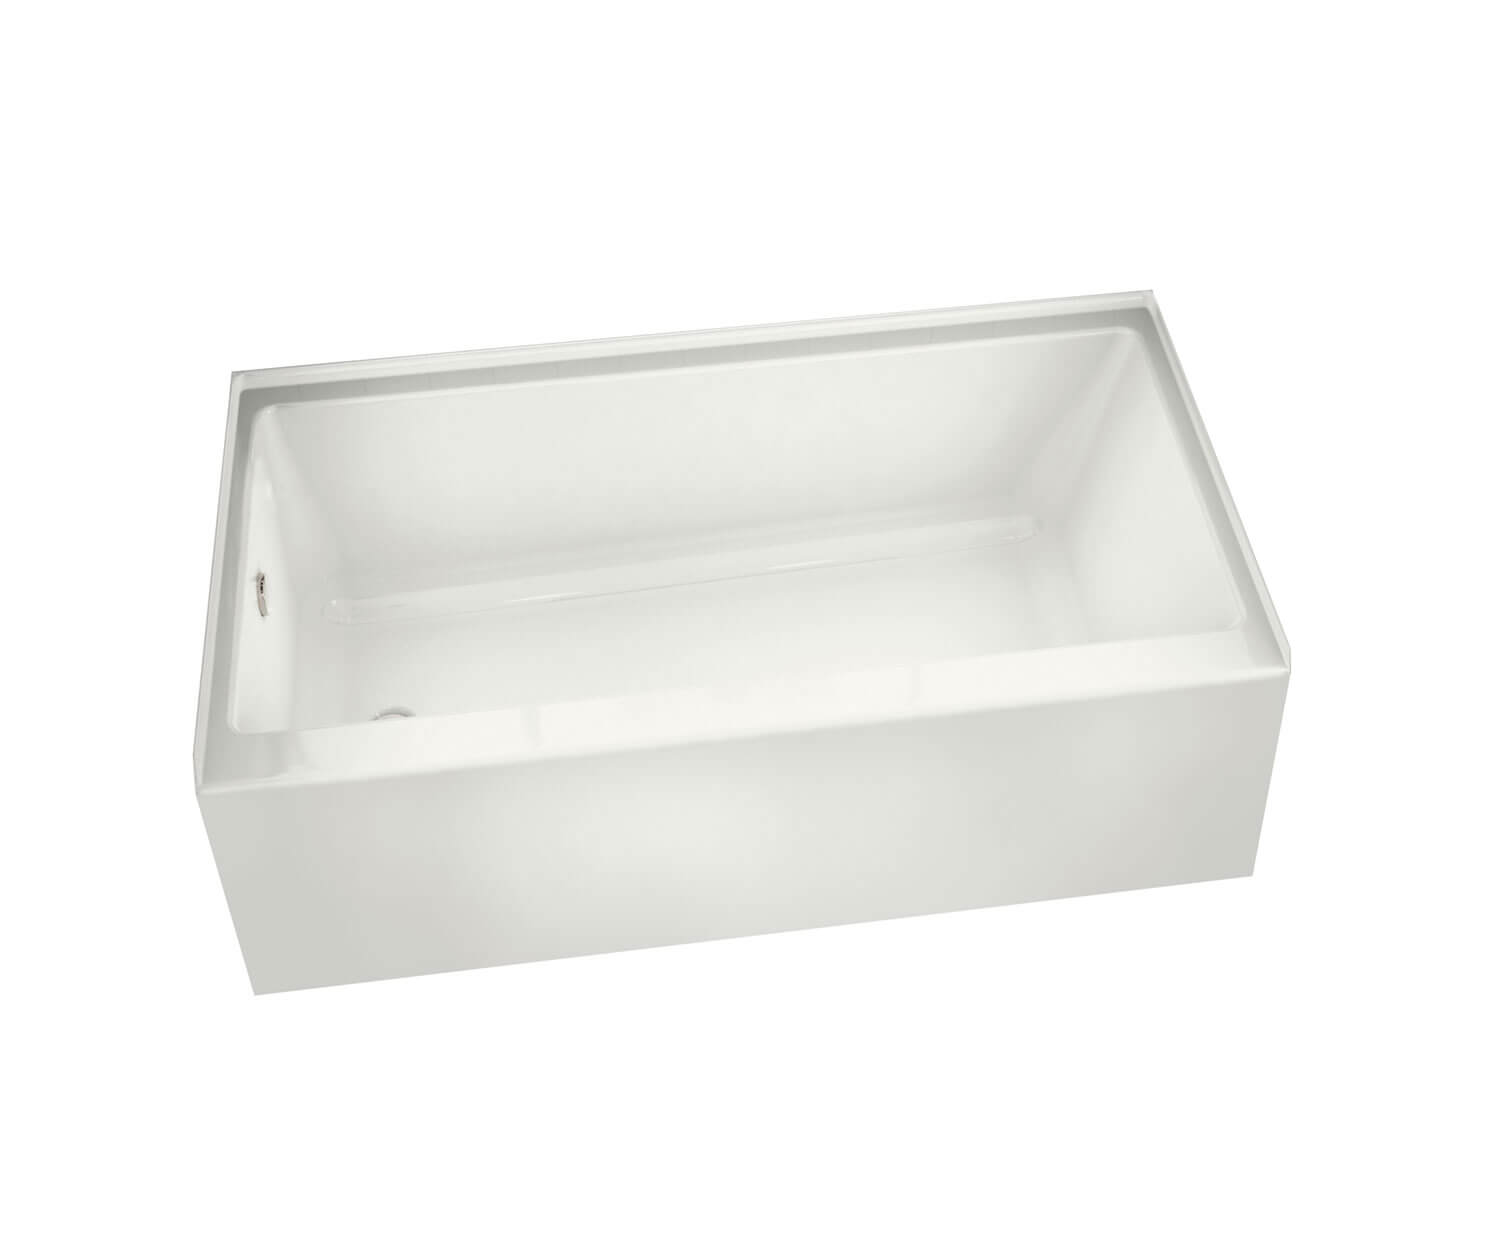 Rubix 60x32x18" Alcove Soaker Bathtub in White w/Right Drain